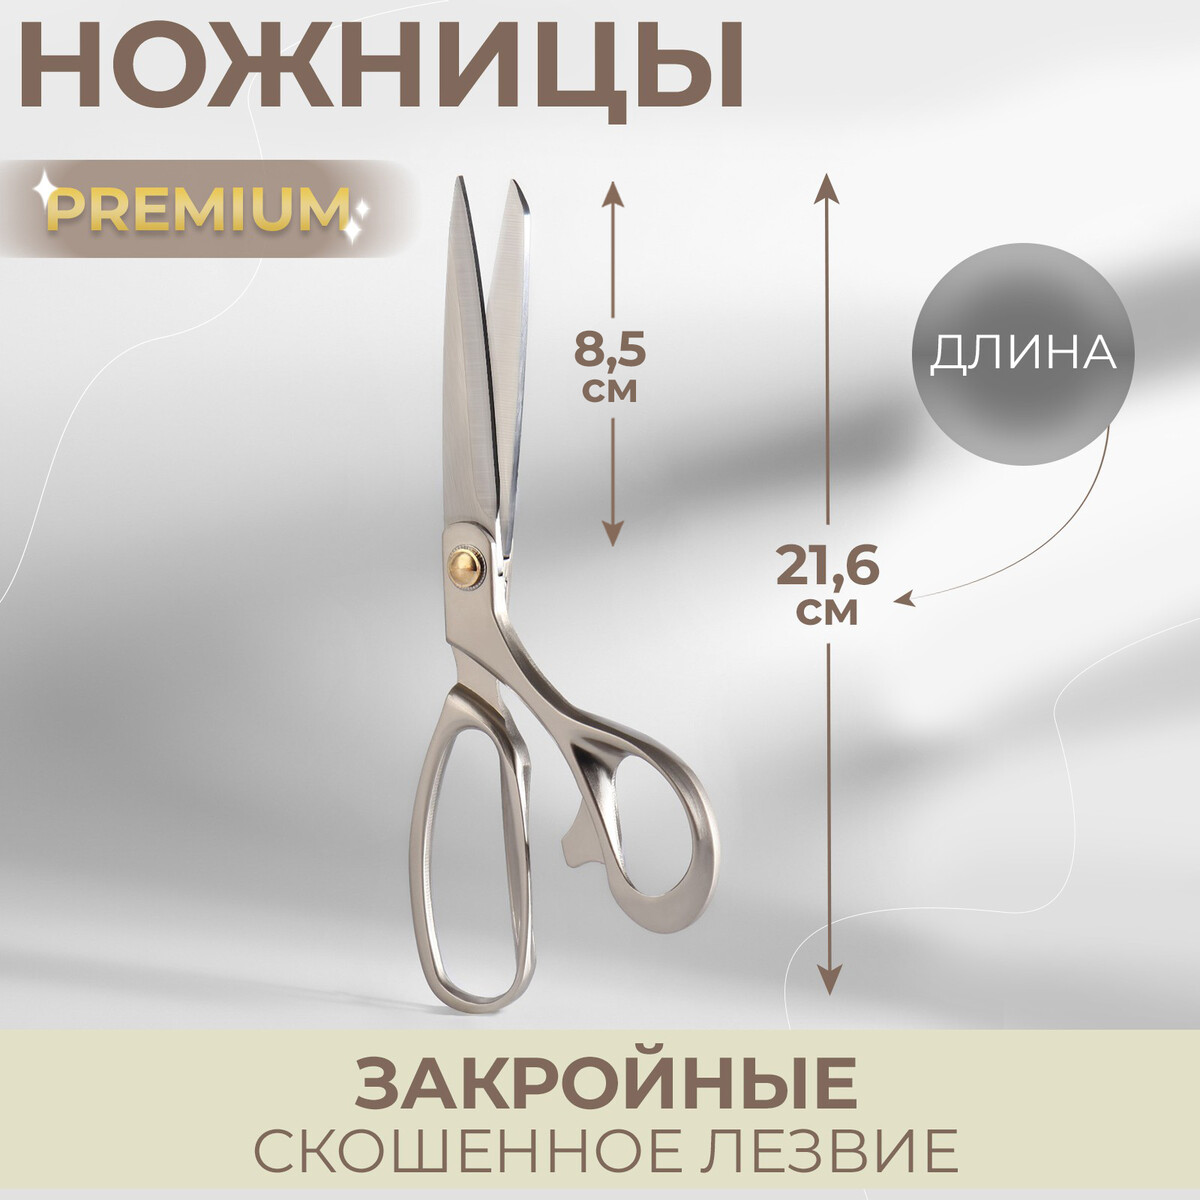 Ножницы закройные premium, скошенное лезвие, 8,5 ножницы закройные скошенное лезвие 8